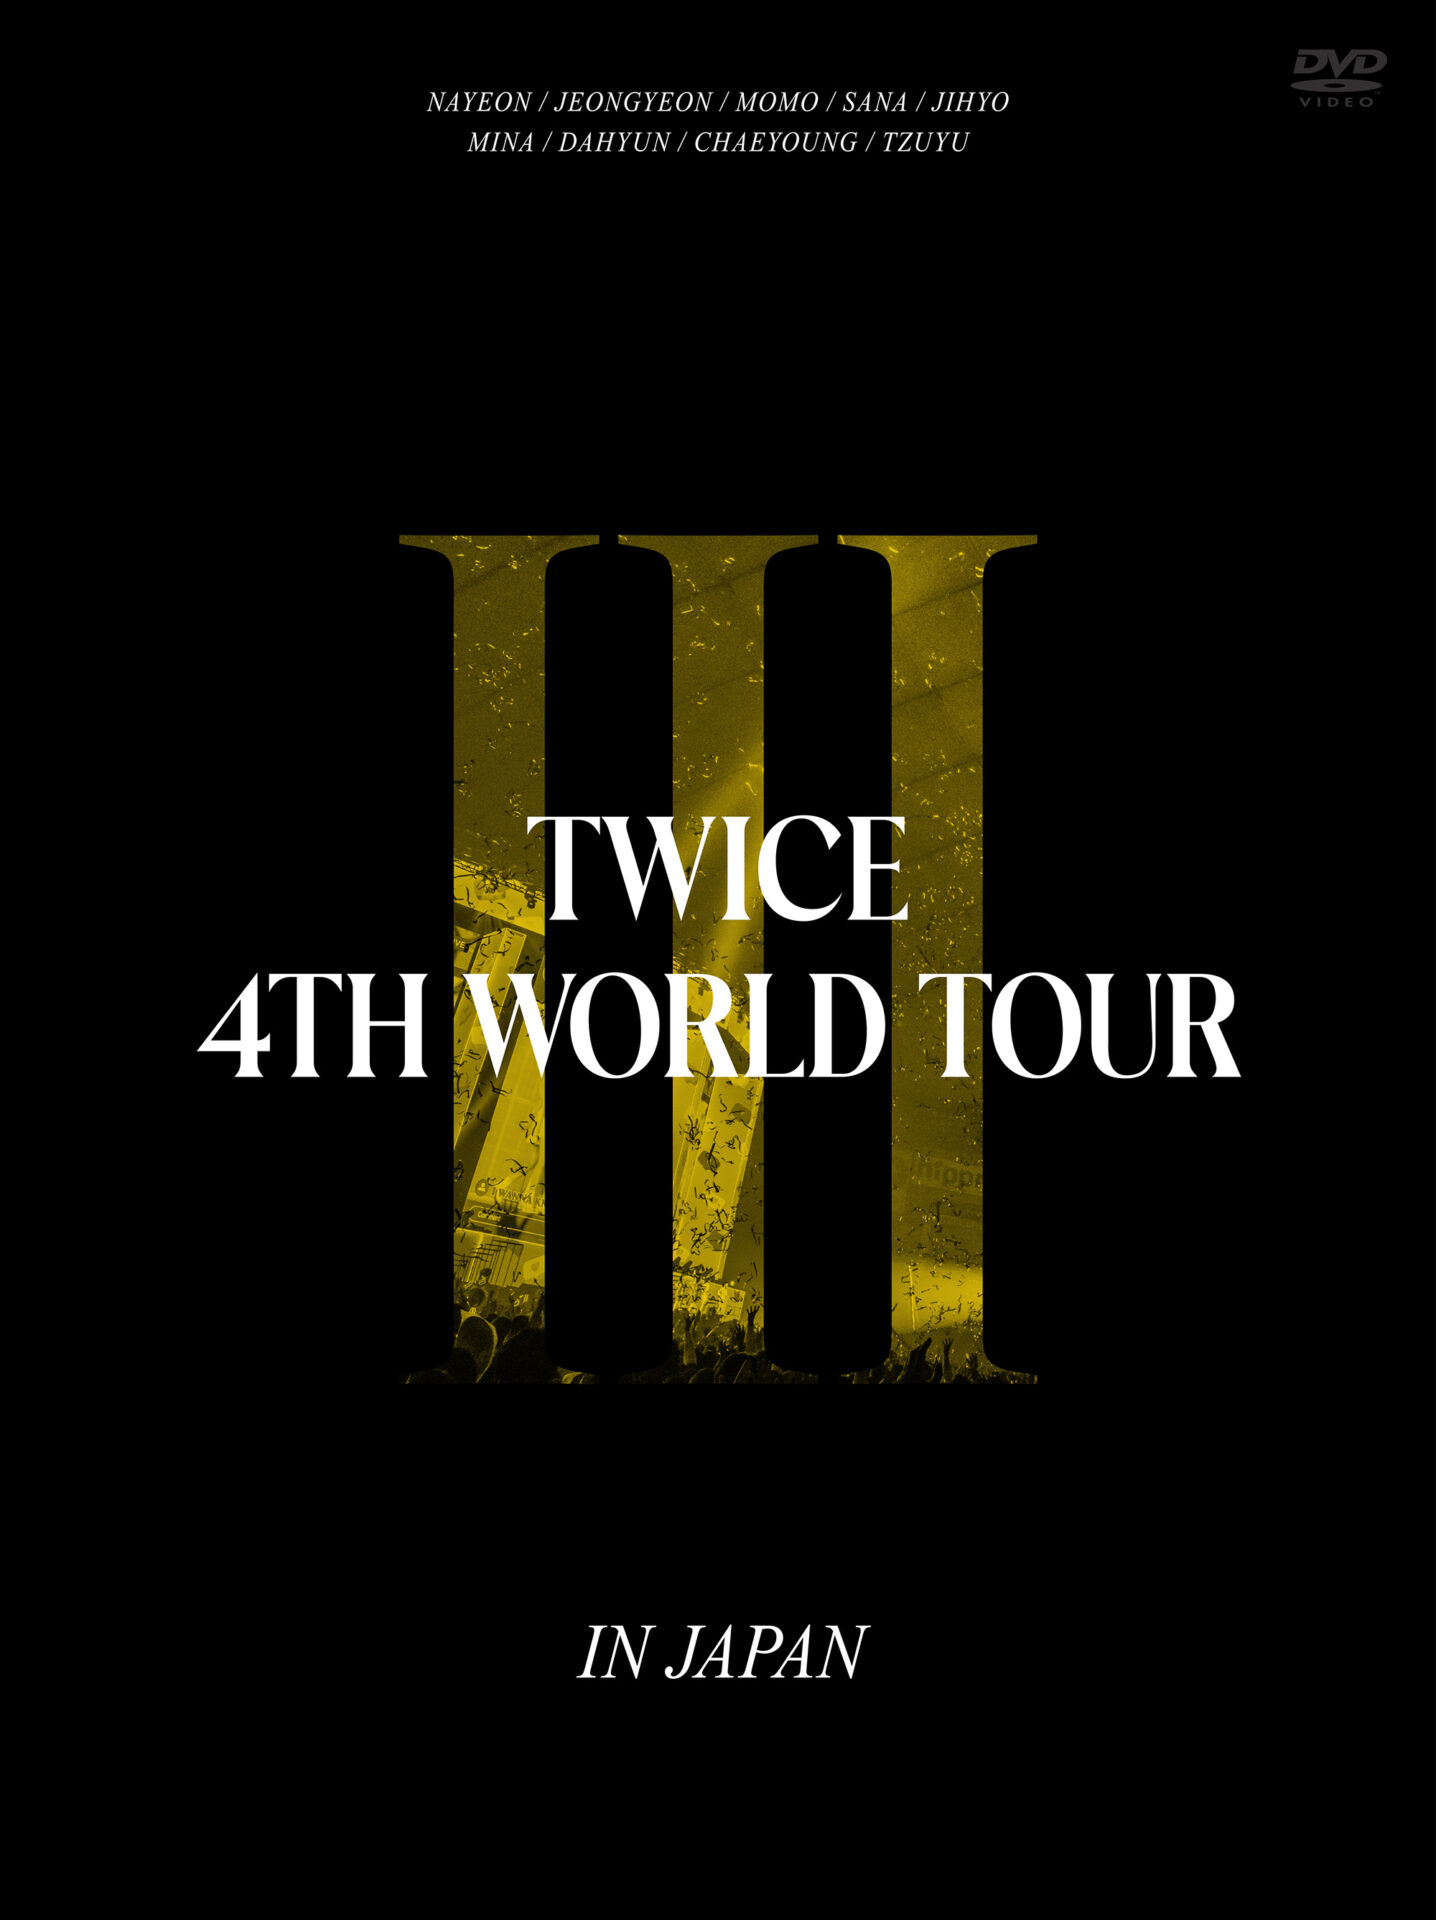  『TWICE 4TH WORLD TOUR 'III' IN JAPAN』初回限定盤ジャケット